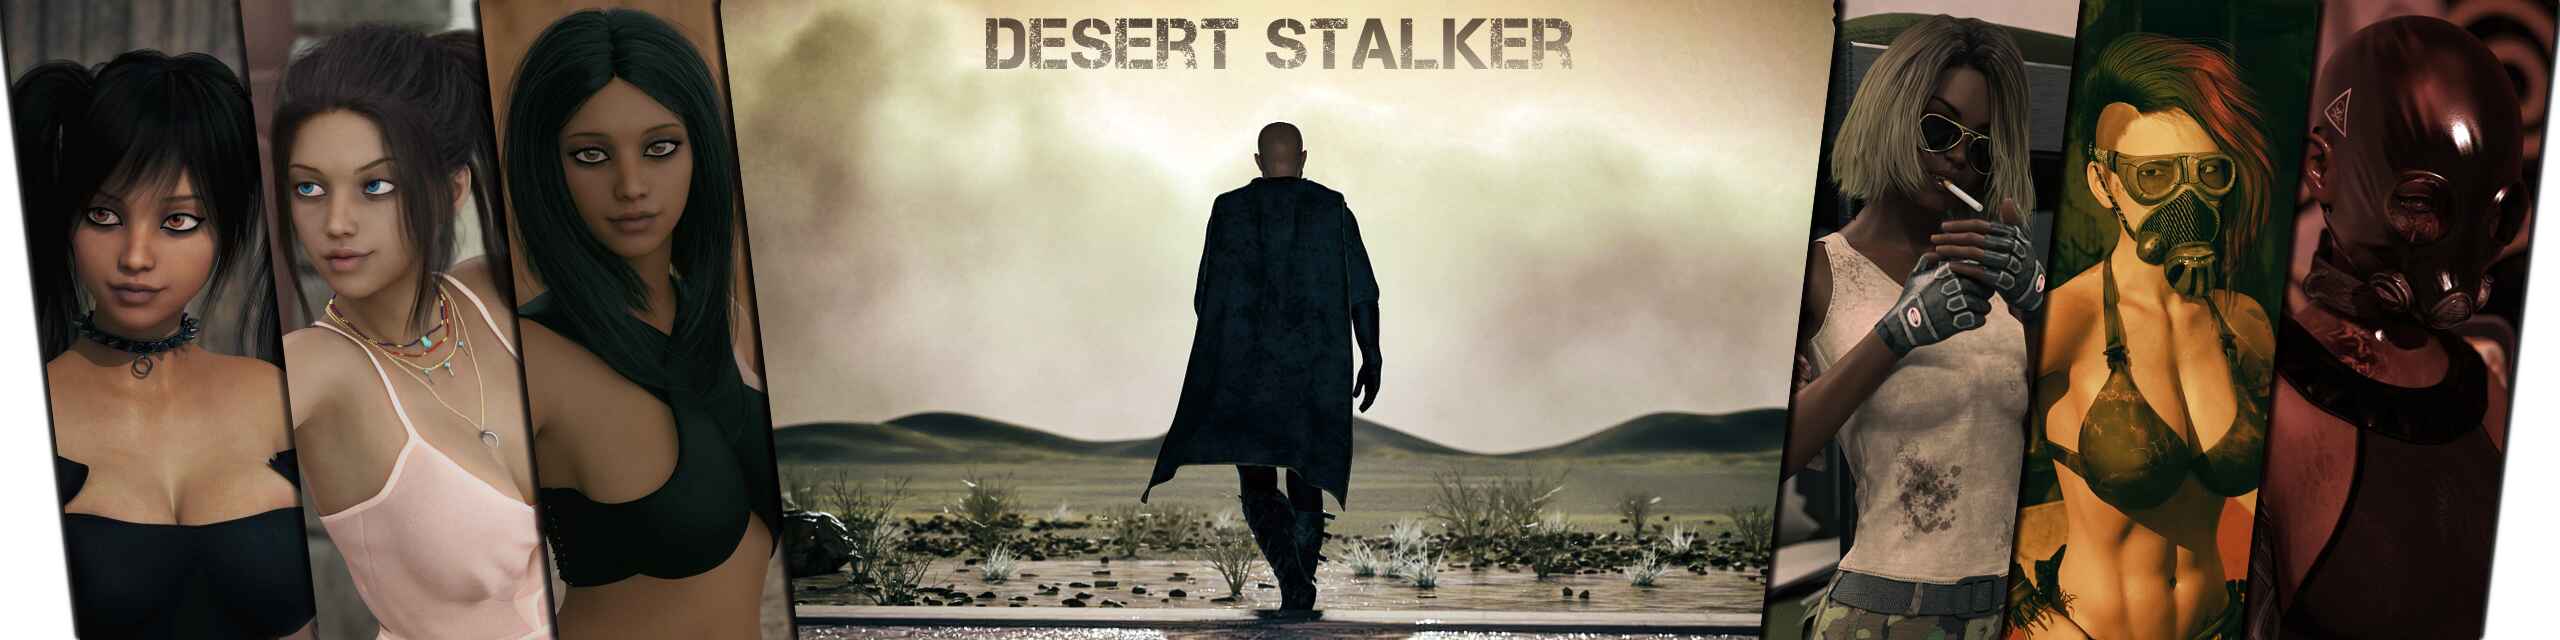 Desert stalker game